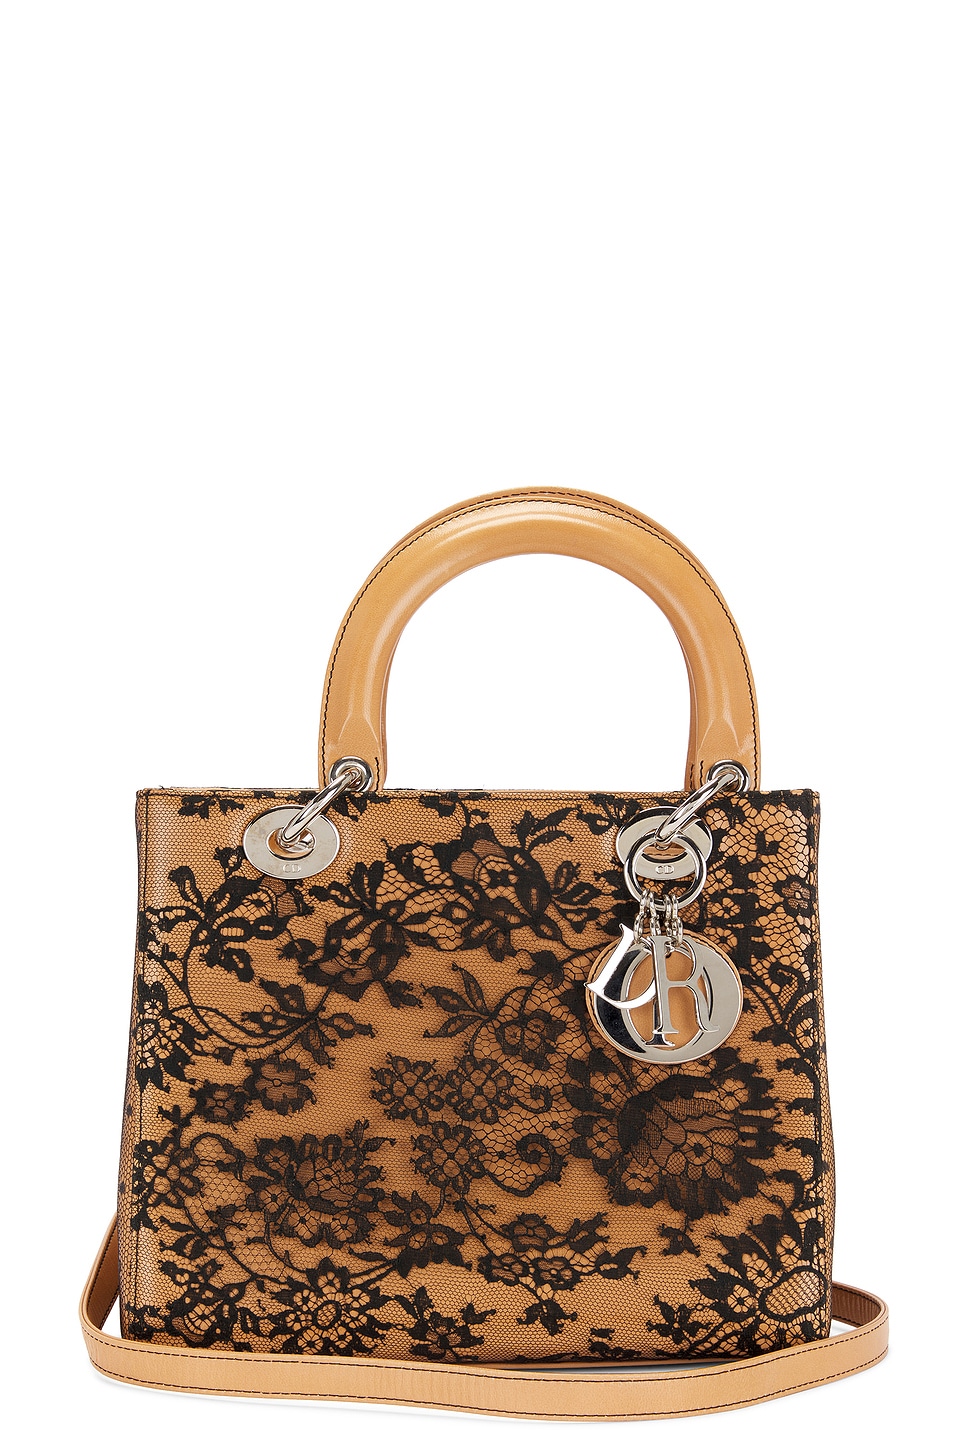 Dior Lady Handbag In Brown